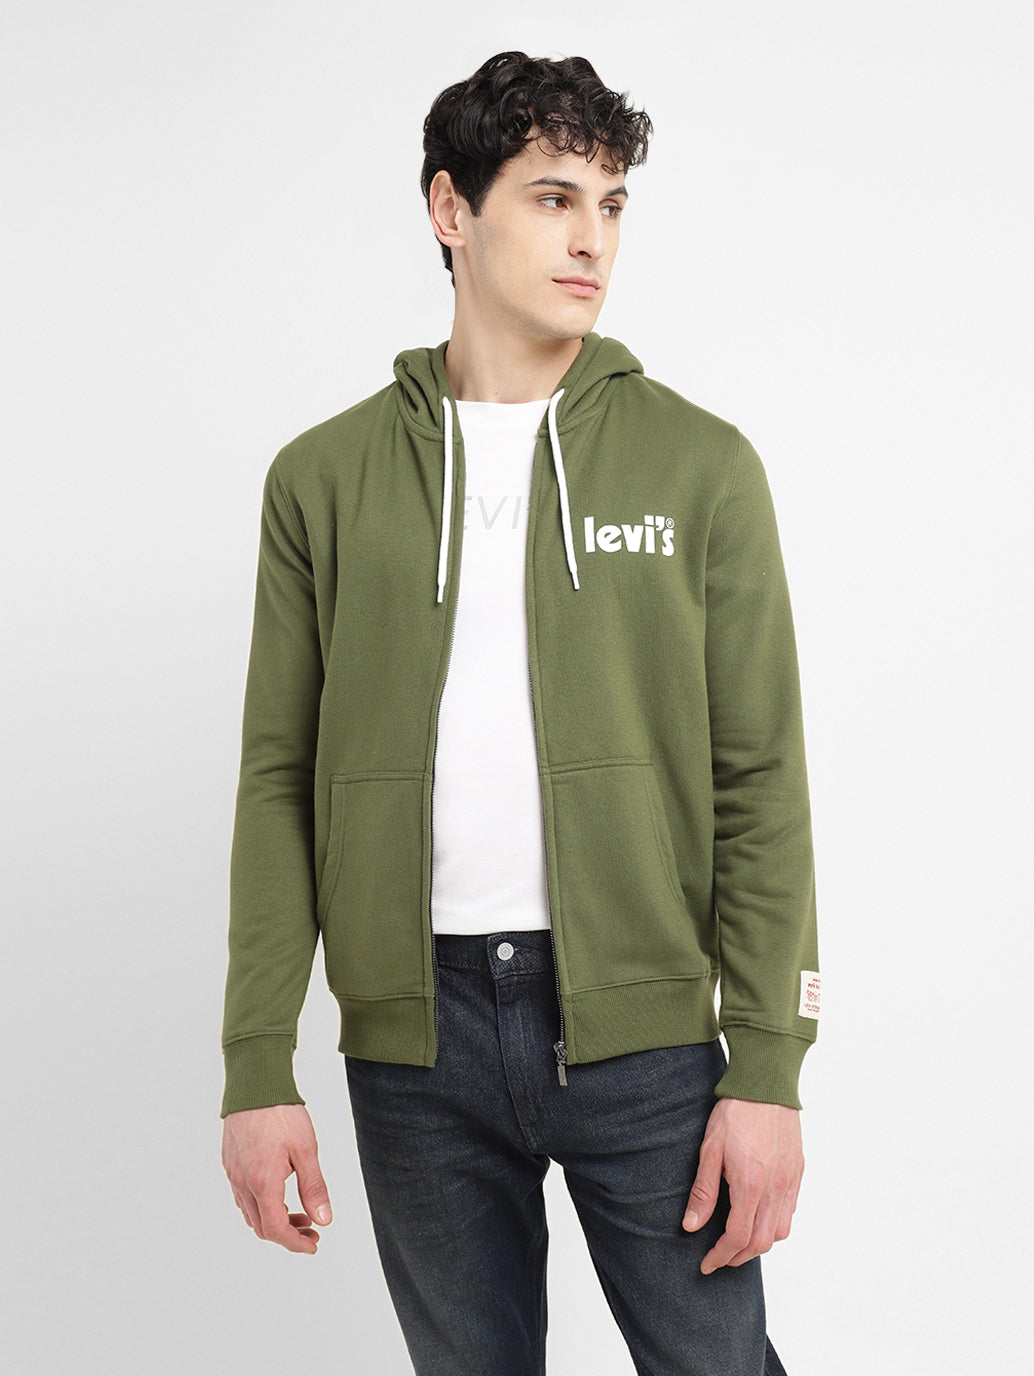 Men's Solid Green Hooded Sweatshirt